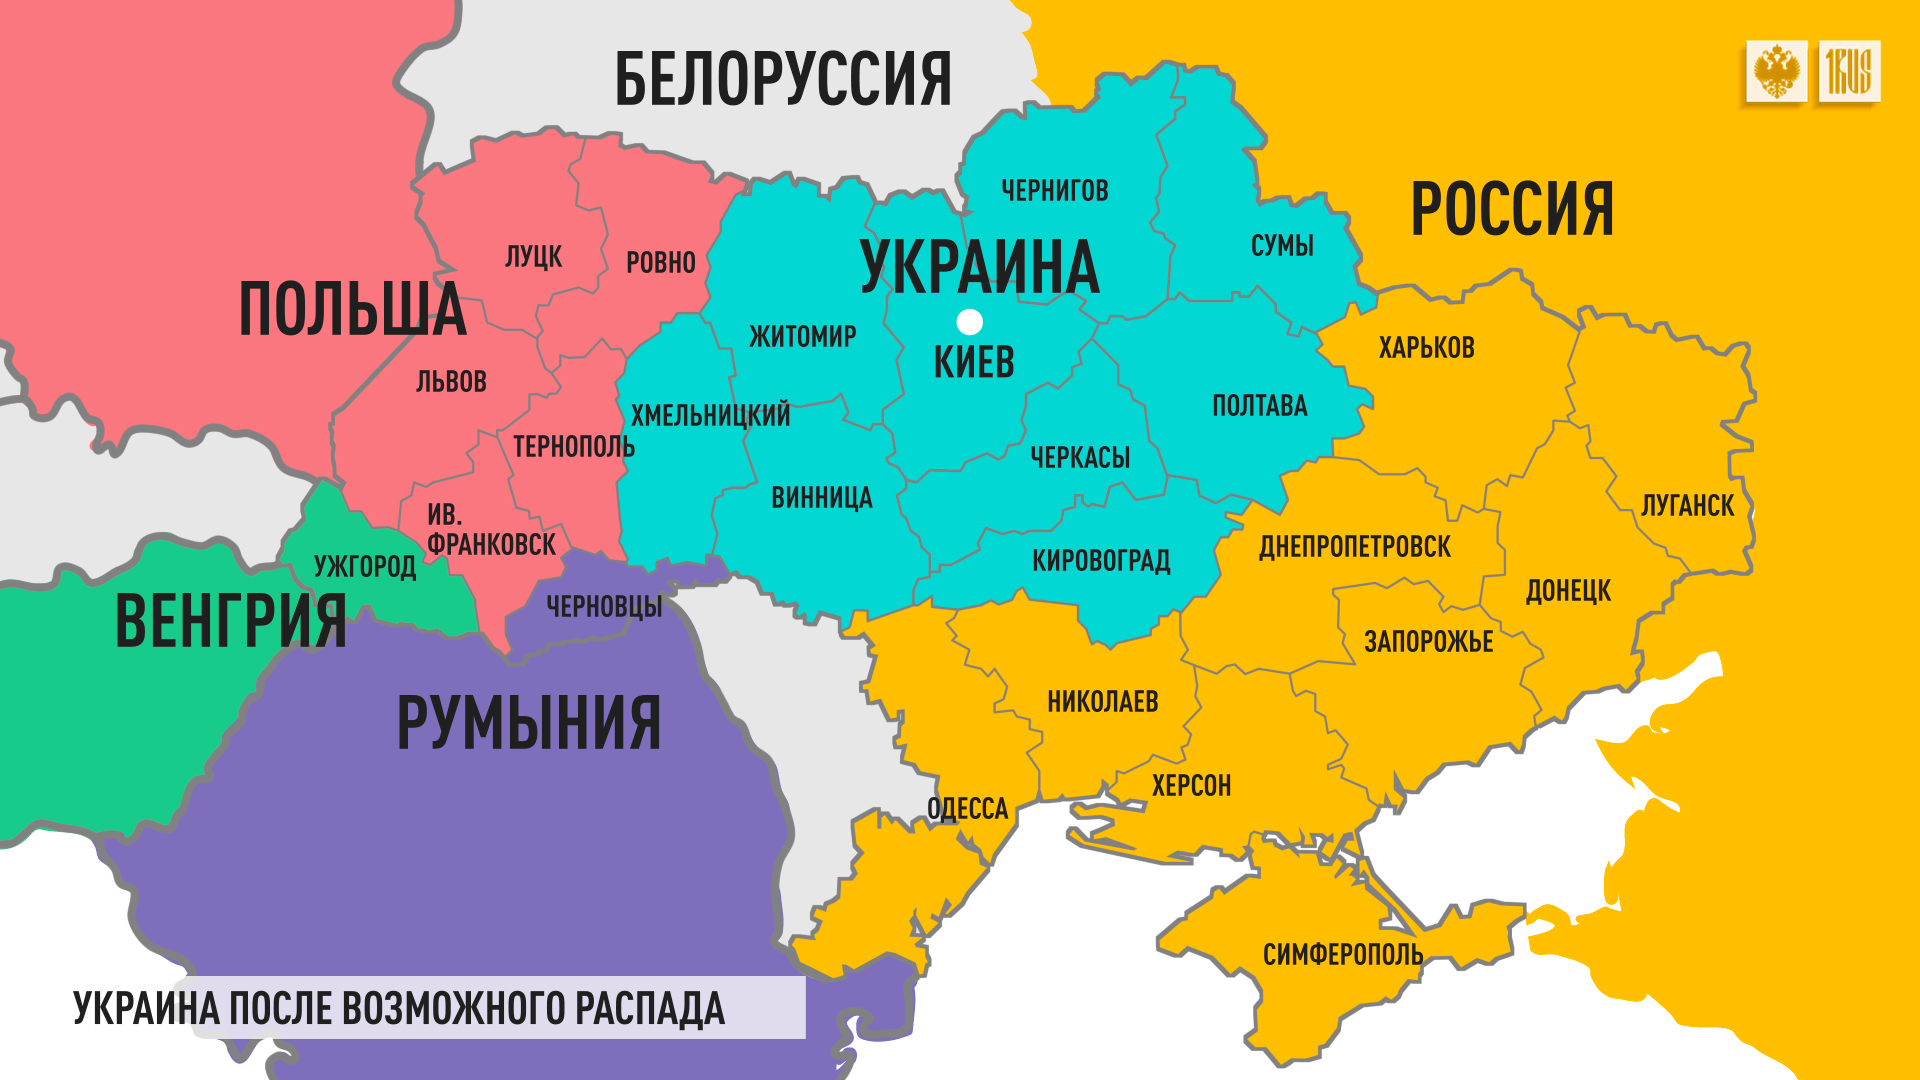 В интернете много различных карт, но именно эта отражает реальные границы исконно украинских, русских, польских, румынских и венгерских земель. По сути, все эти области вошли в состав Украины по воле СССР.